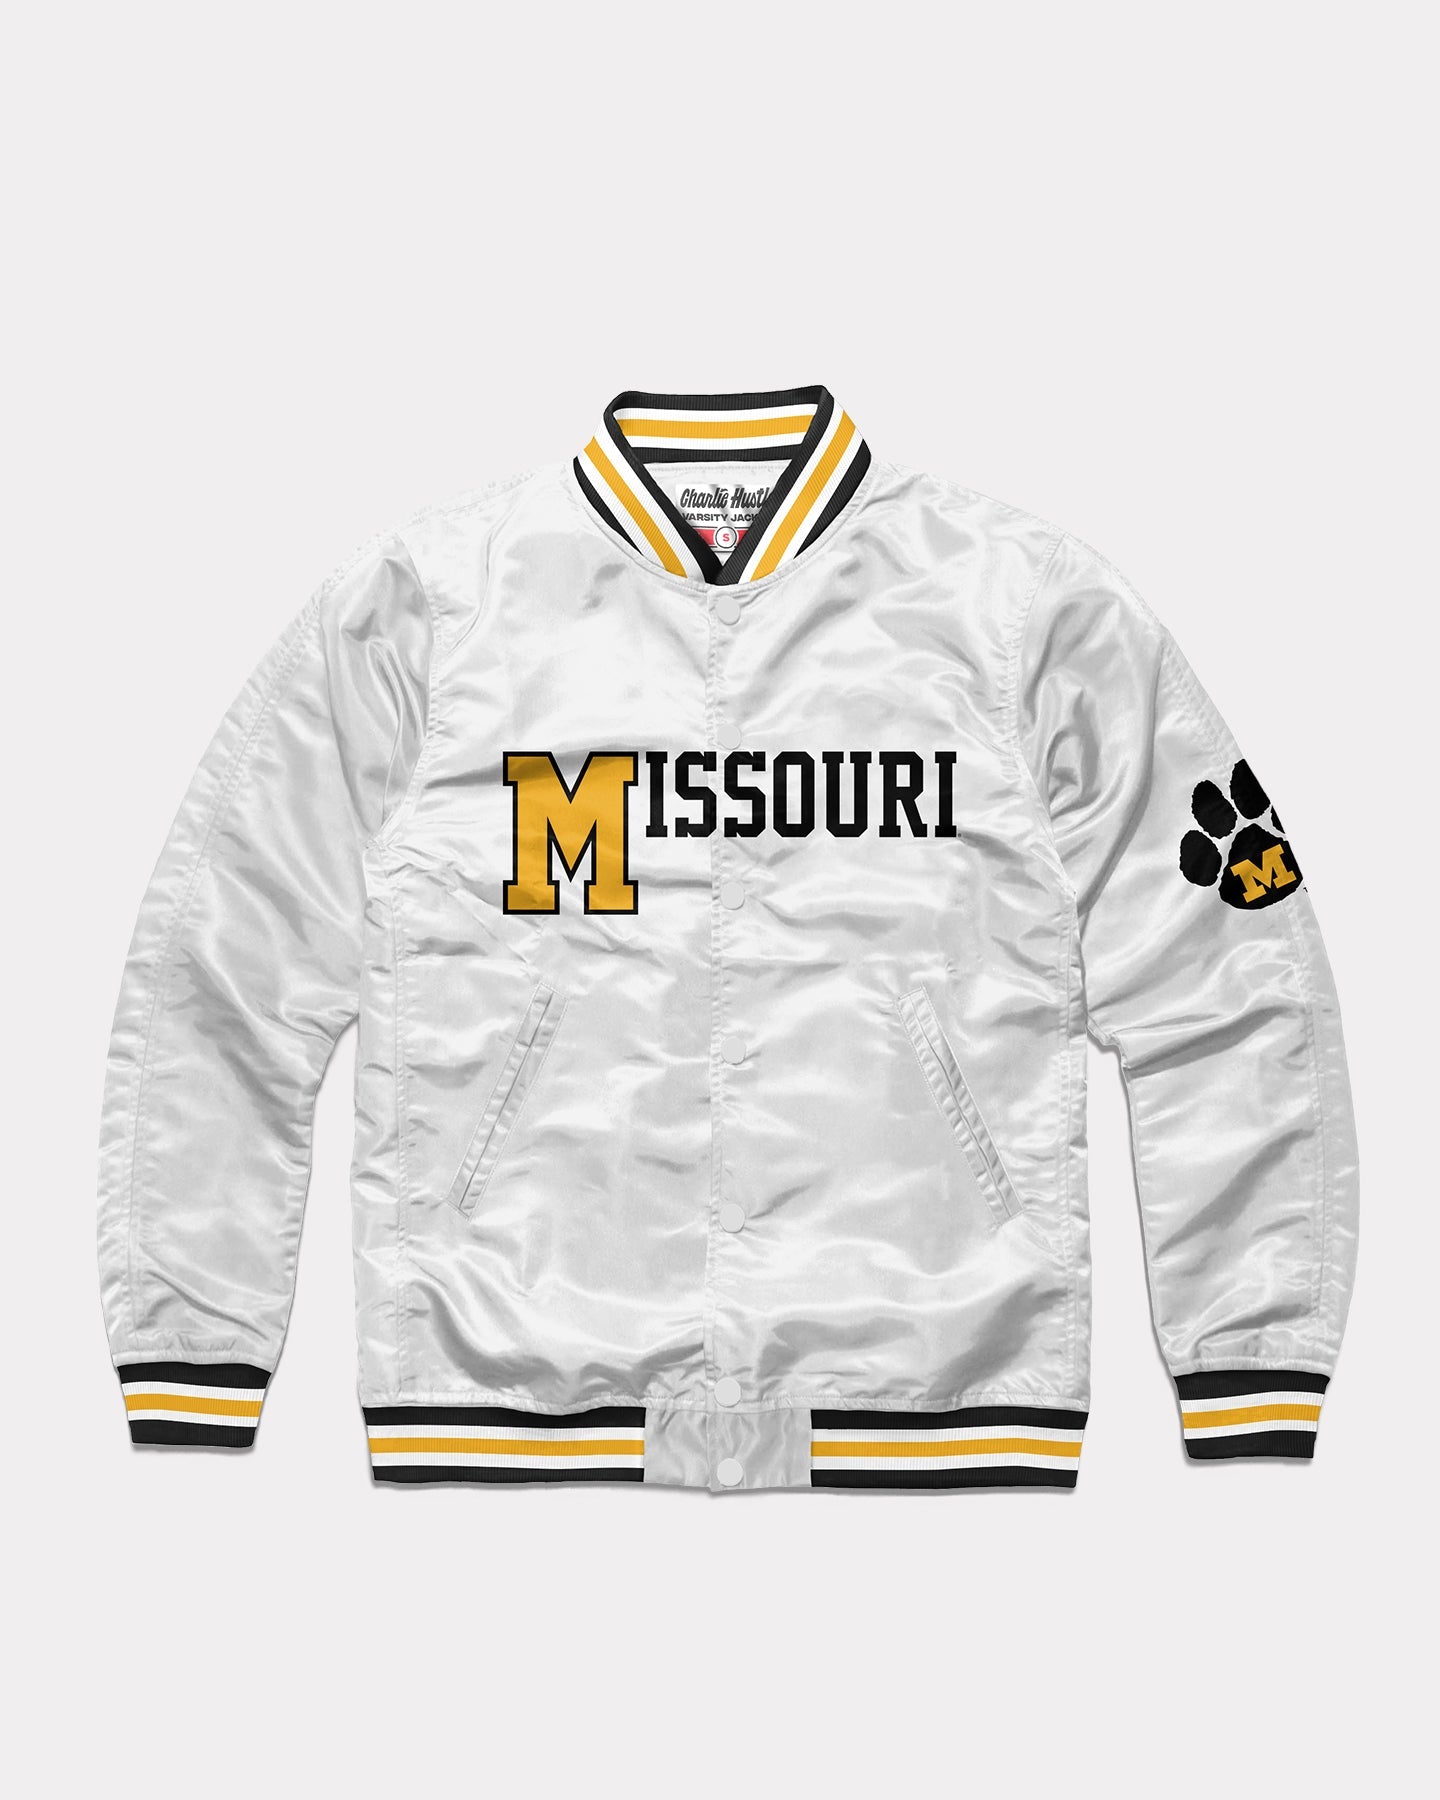 Missouri Tigers Gear, Missouri Tigers Jerseys, Store, Mizzou Pro